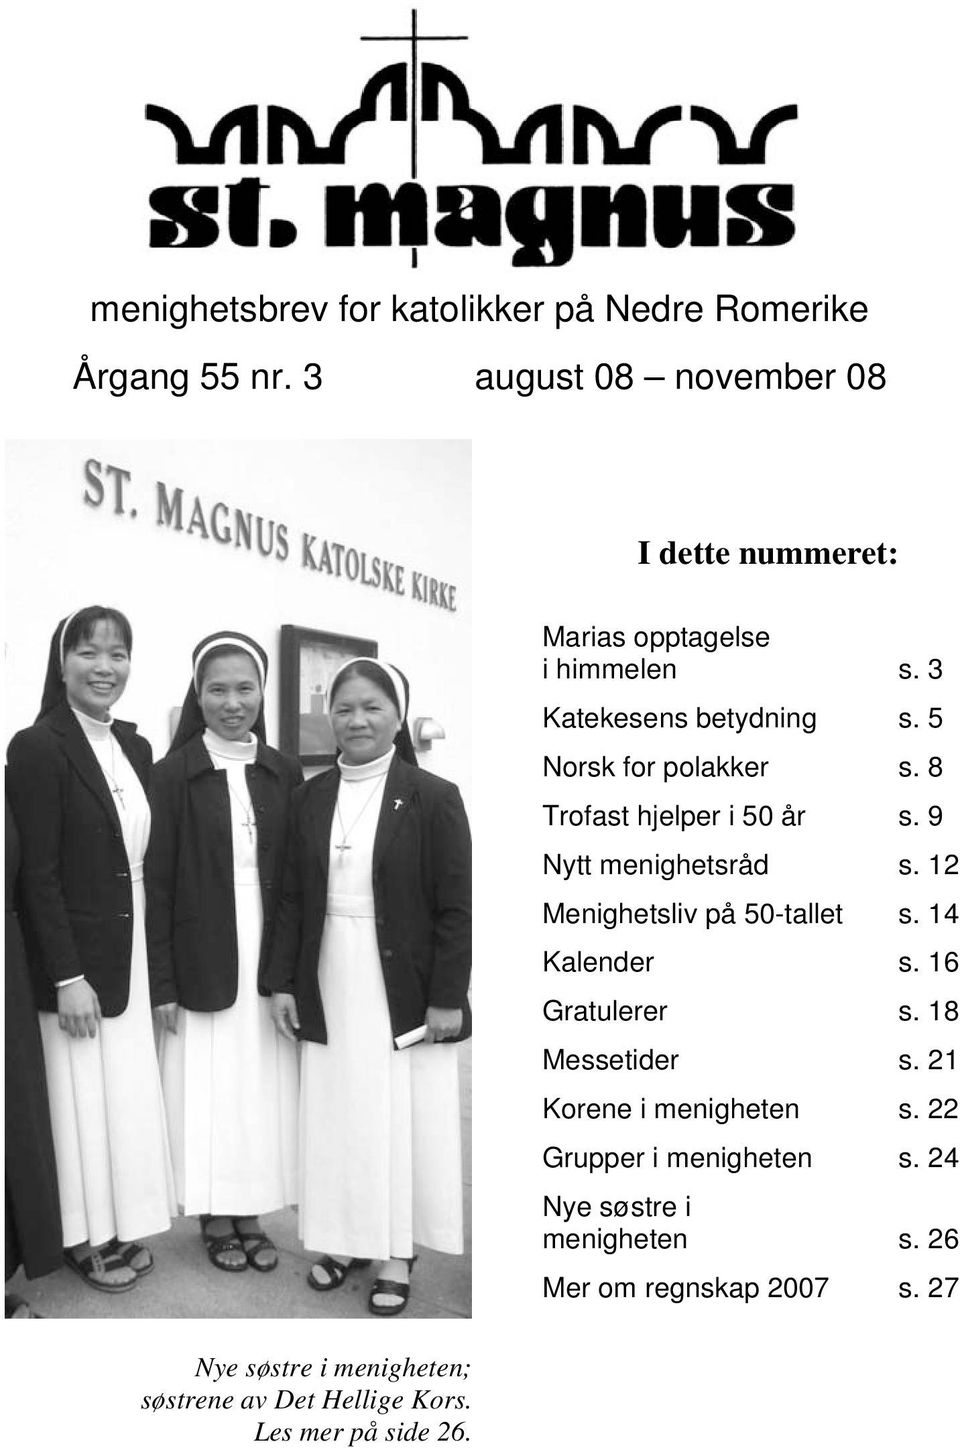 Marias opptagelse i himmelen s. 3 Katekesens betydning s. 5 Norsk for polakker s. 8 Trofast hjelper i 50 år s.